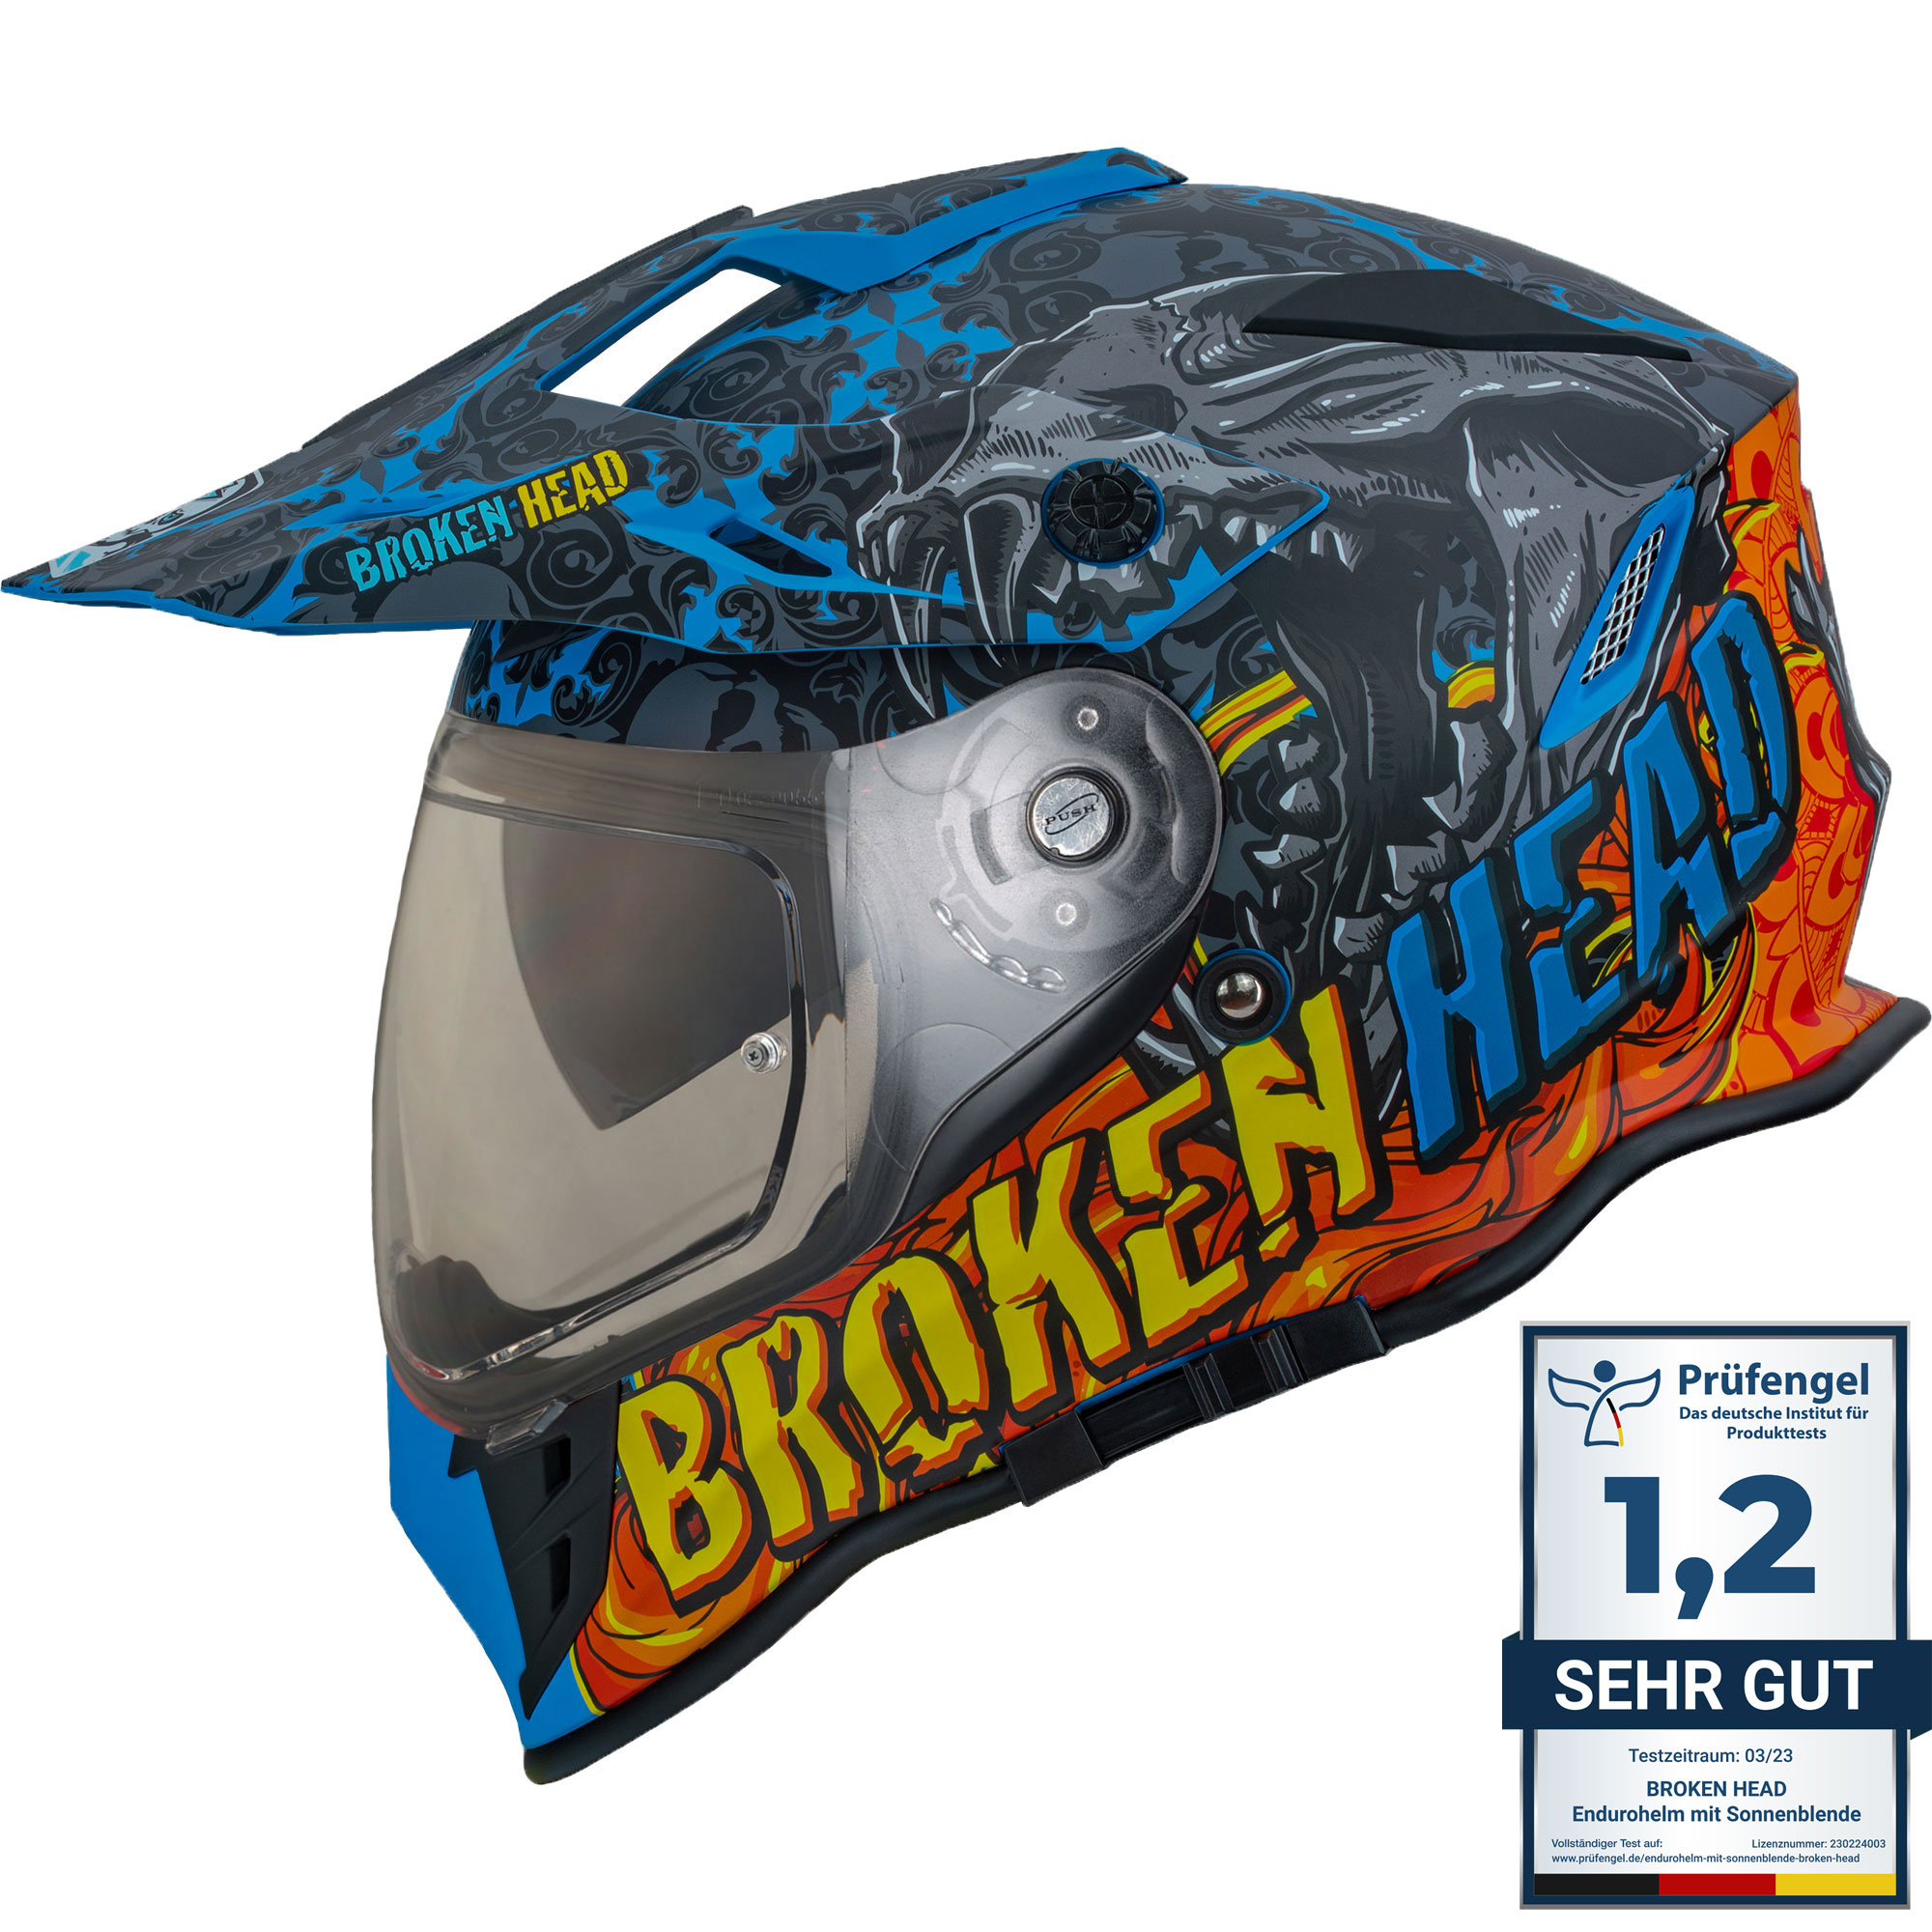 Broken Head Tigris VX2 Endurohelm 3-in-1-Helm Mit Sonnenblende